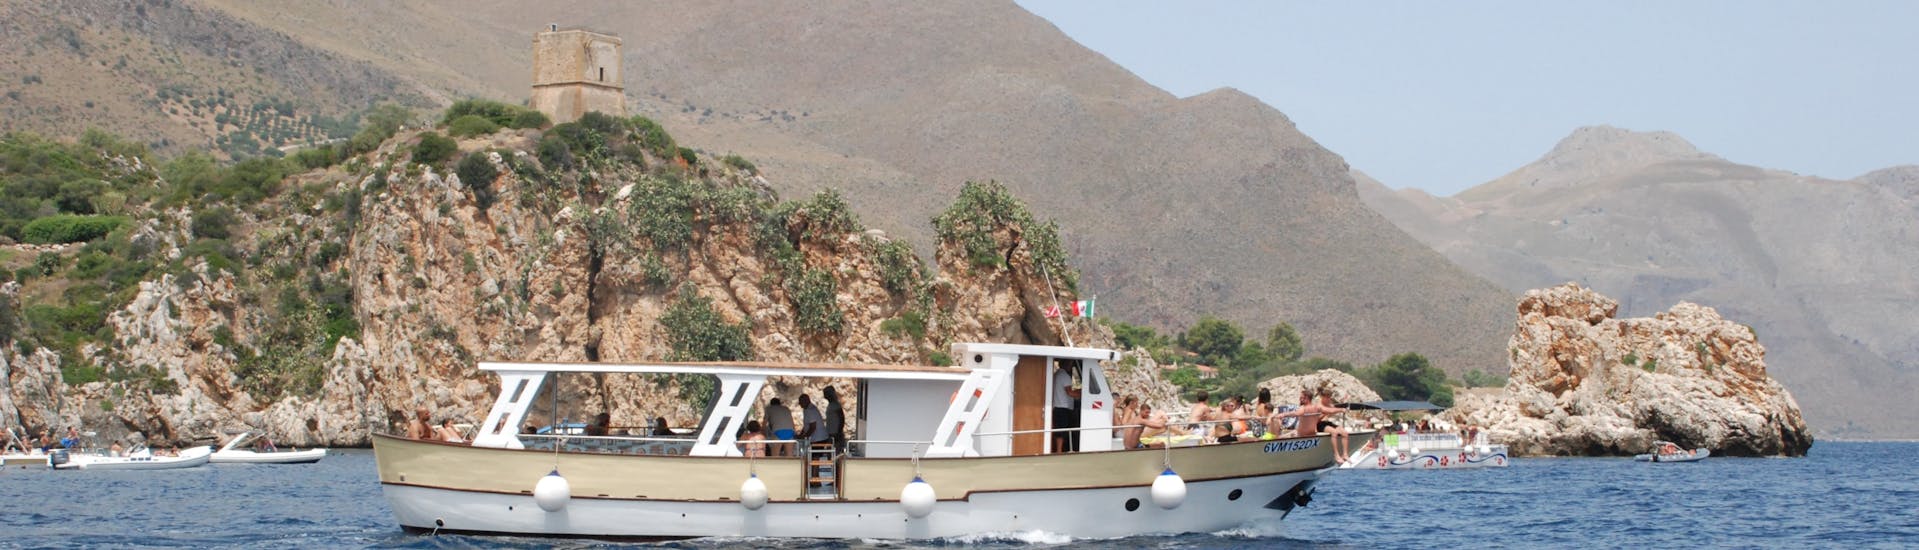 Le bateau de Primero naviguant lors de la Balade en bateau à la réserve naturelle du Zingaro et aux Faraglioni di Scopello avec Apéritif & Snorkeling avec Primero San Vito Lo Capo.